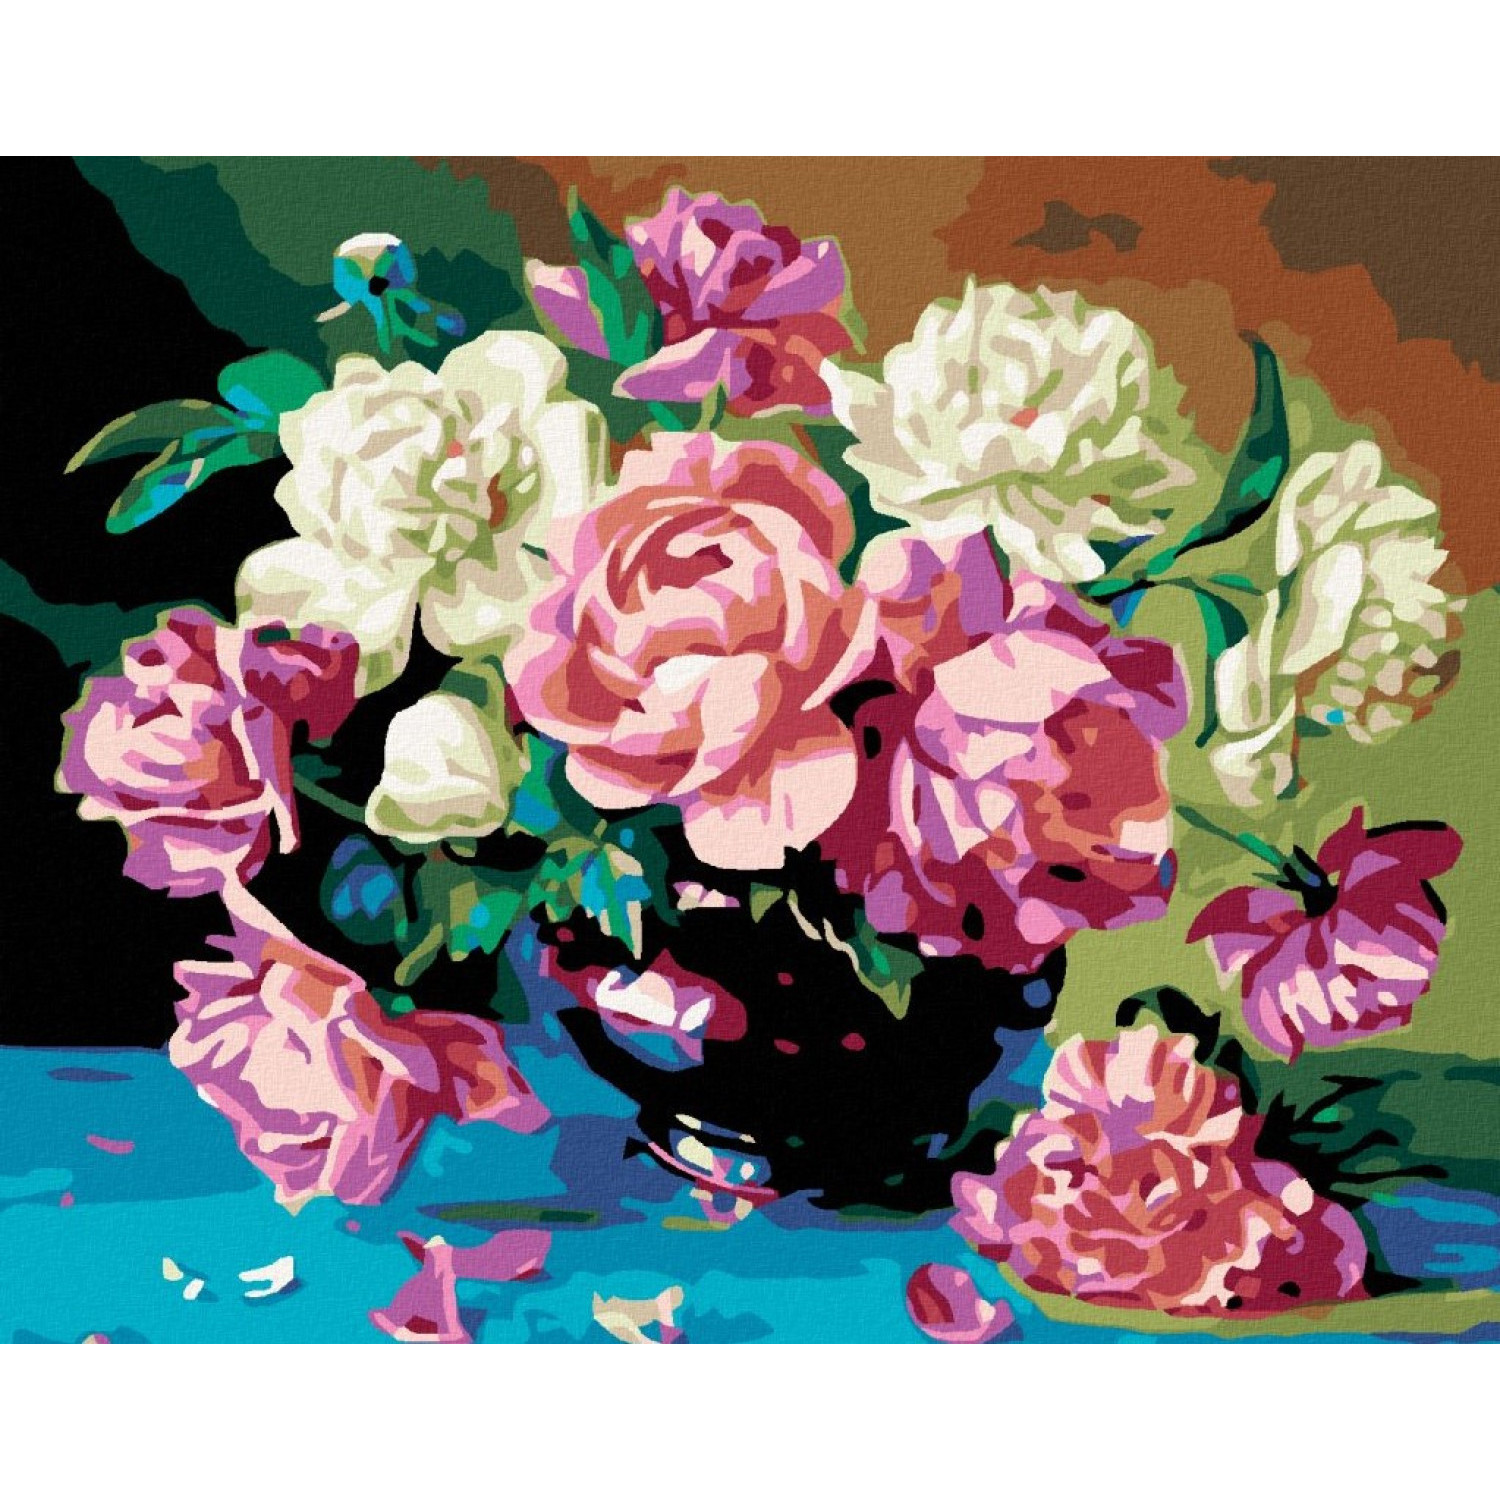 Рисуване по номера Букет от розови и бели божури, с подрамка, 40х50 см.